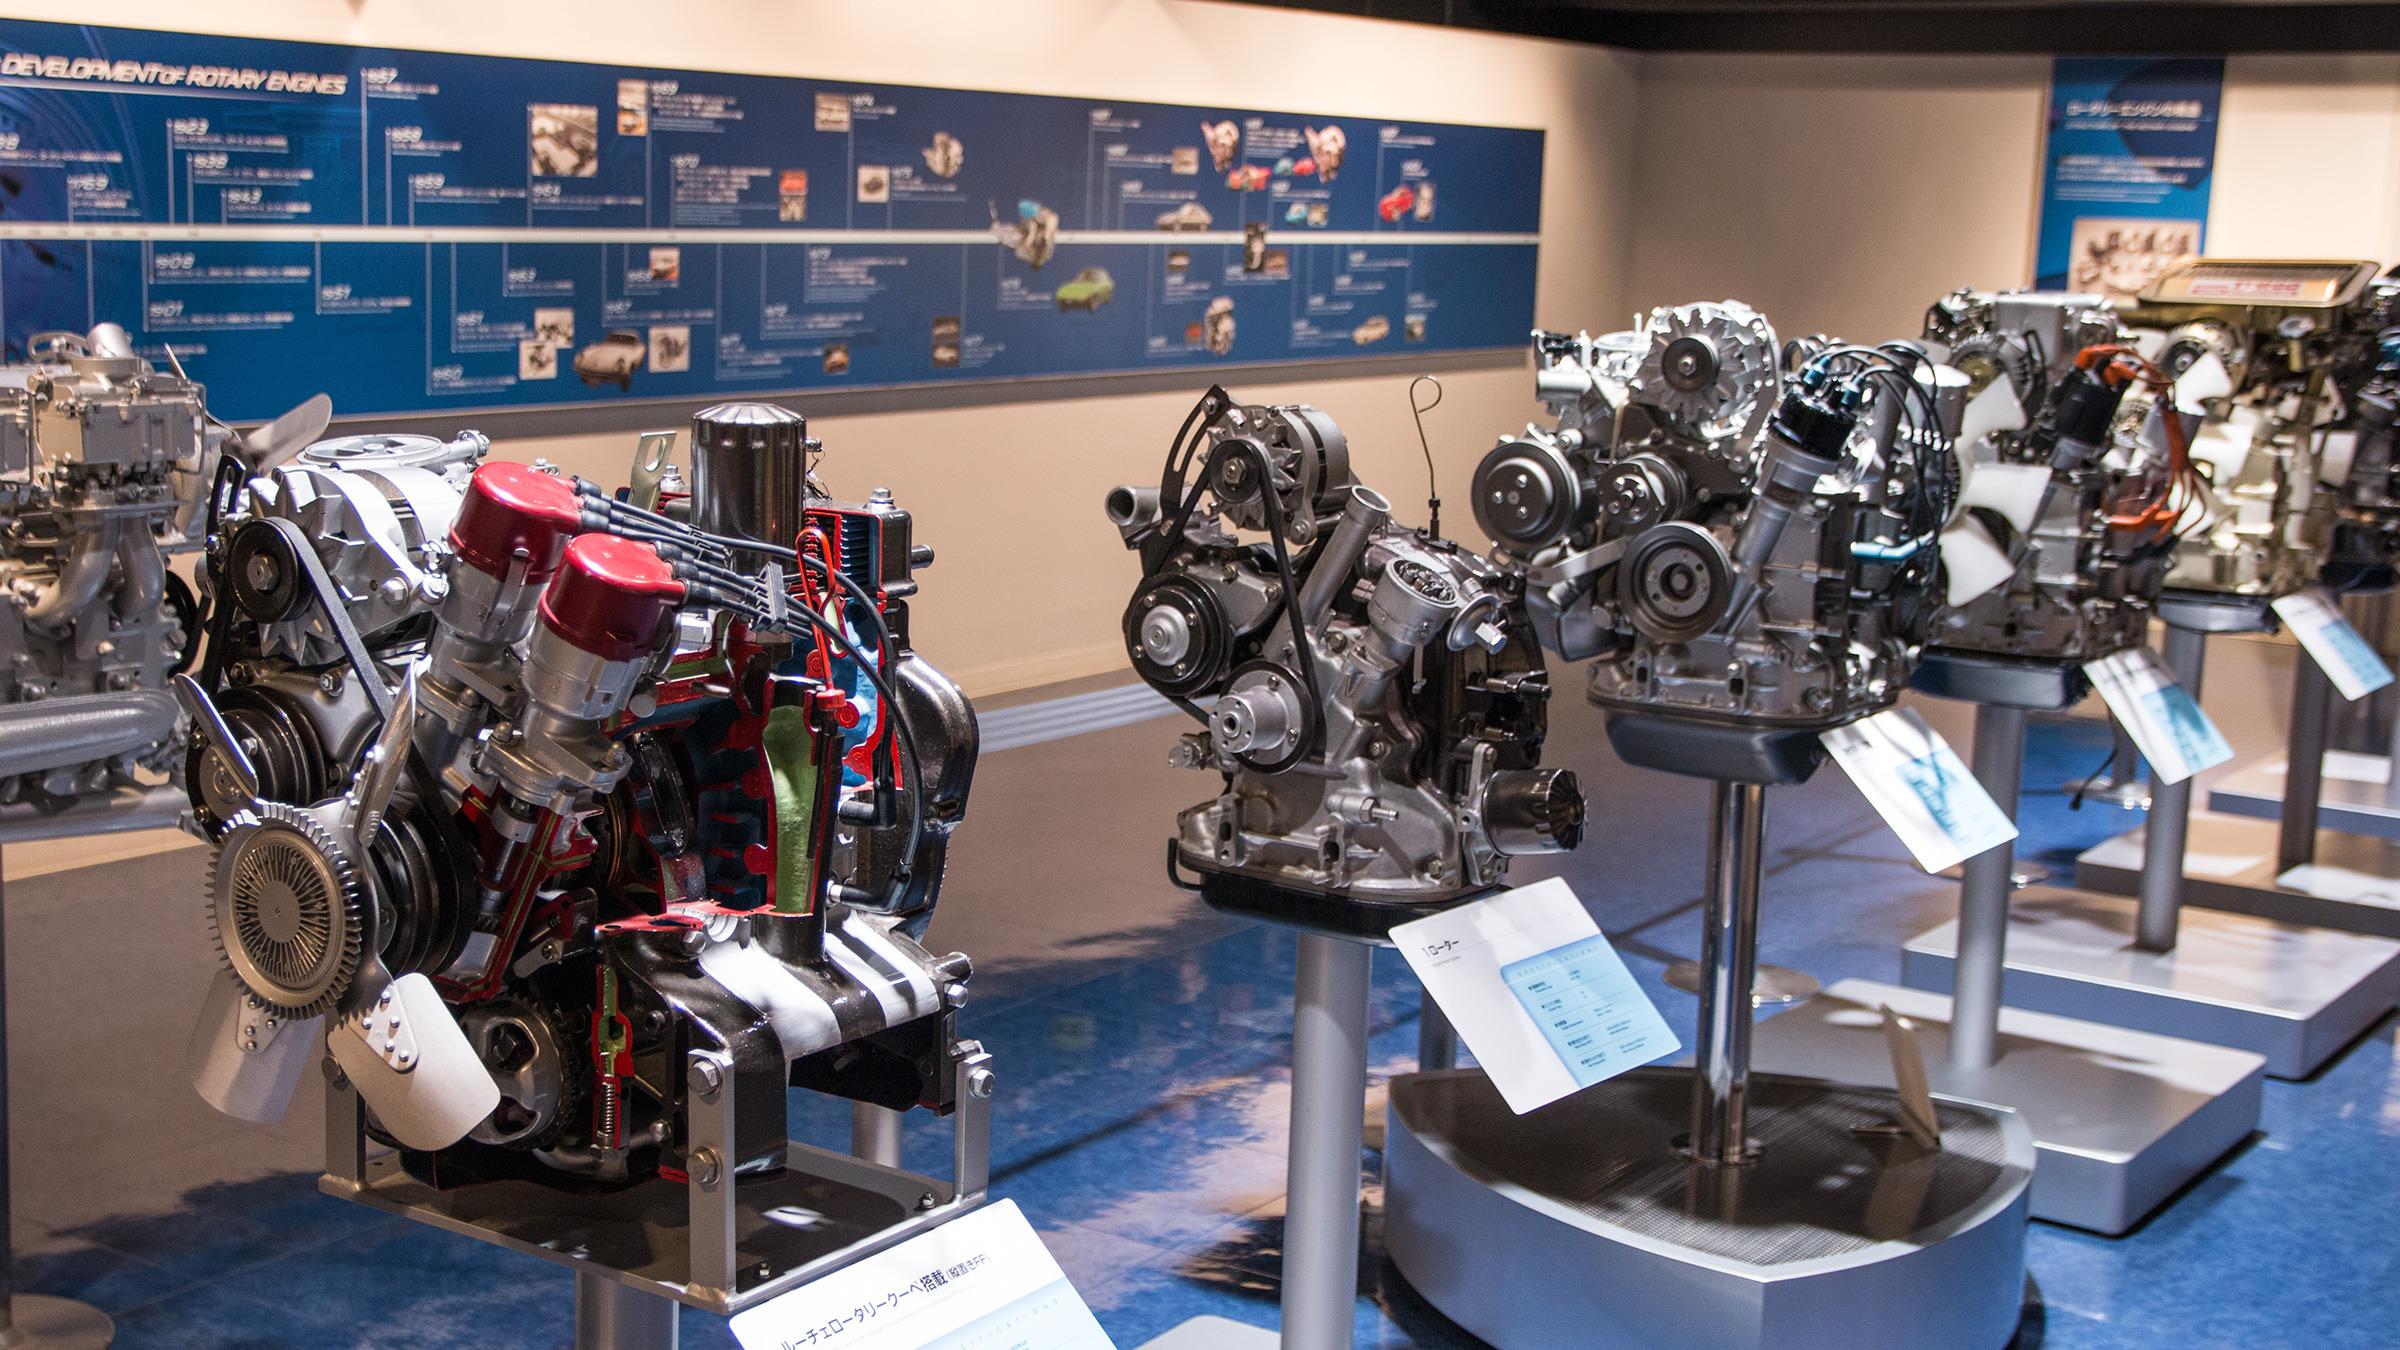 Et utvalg av Mazda sine Wankel-motorer fra opp gjennom årene. Denne teknologien er årsaken til at Mazda eksisterer som et uavhengig selskap i dag.Foto: Varg Aamo, Hardware.no